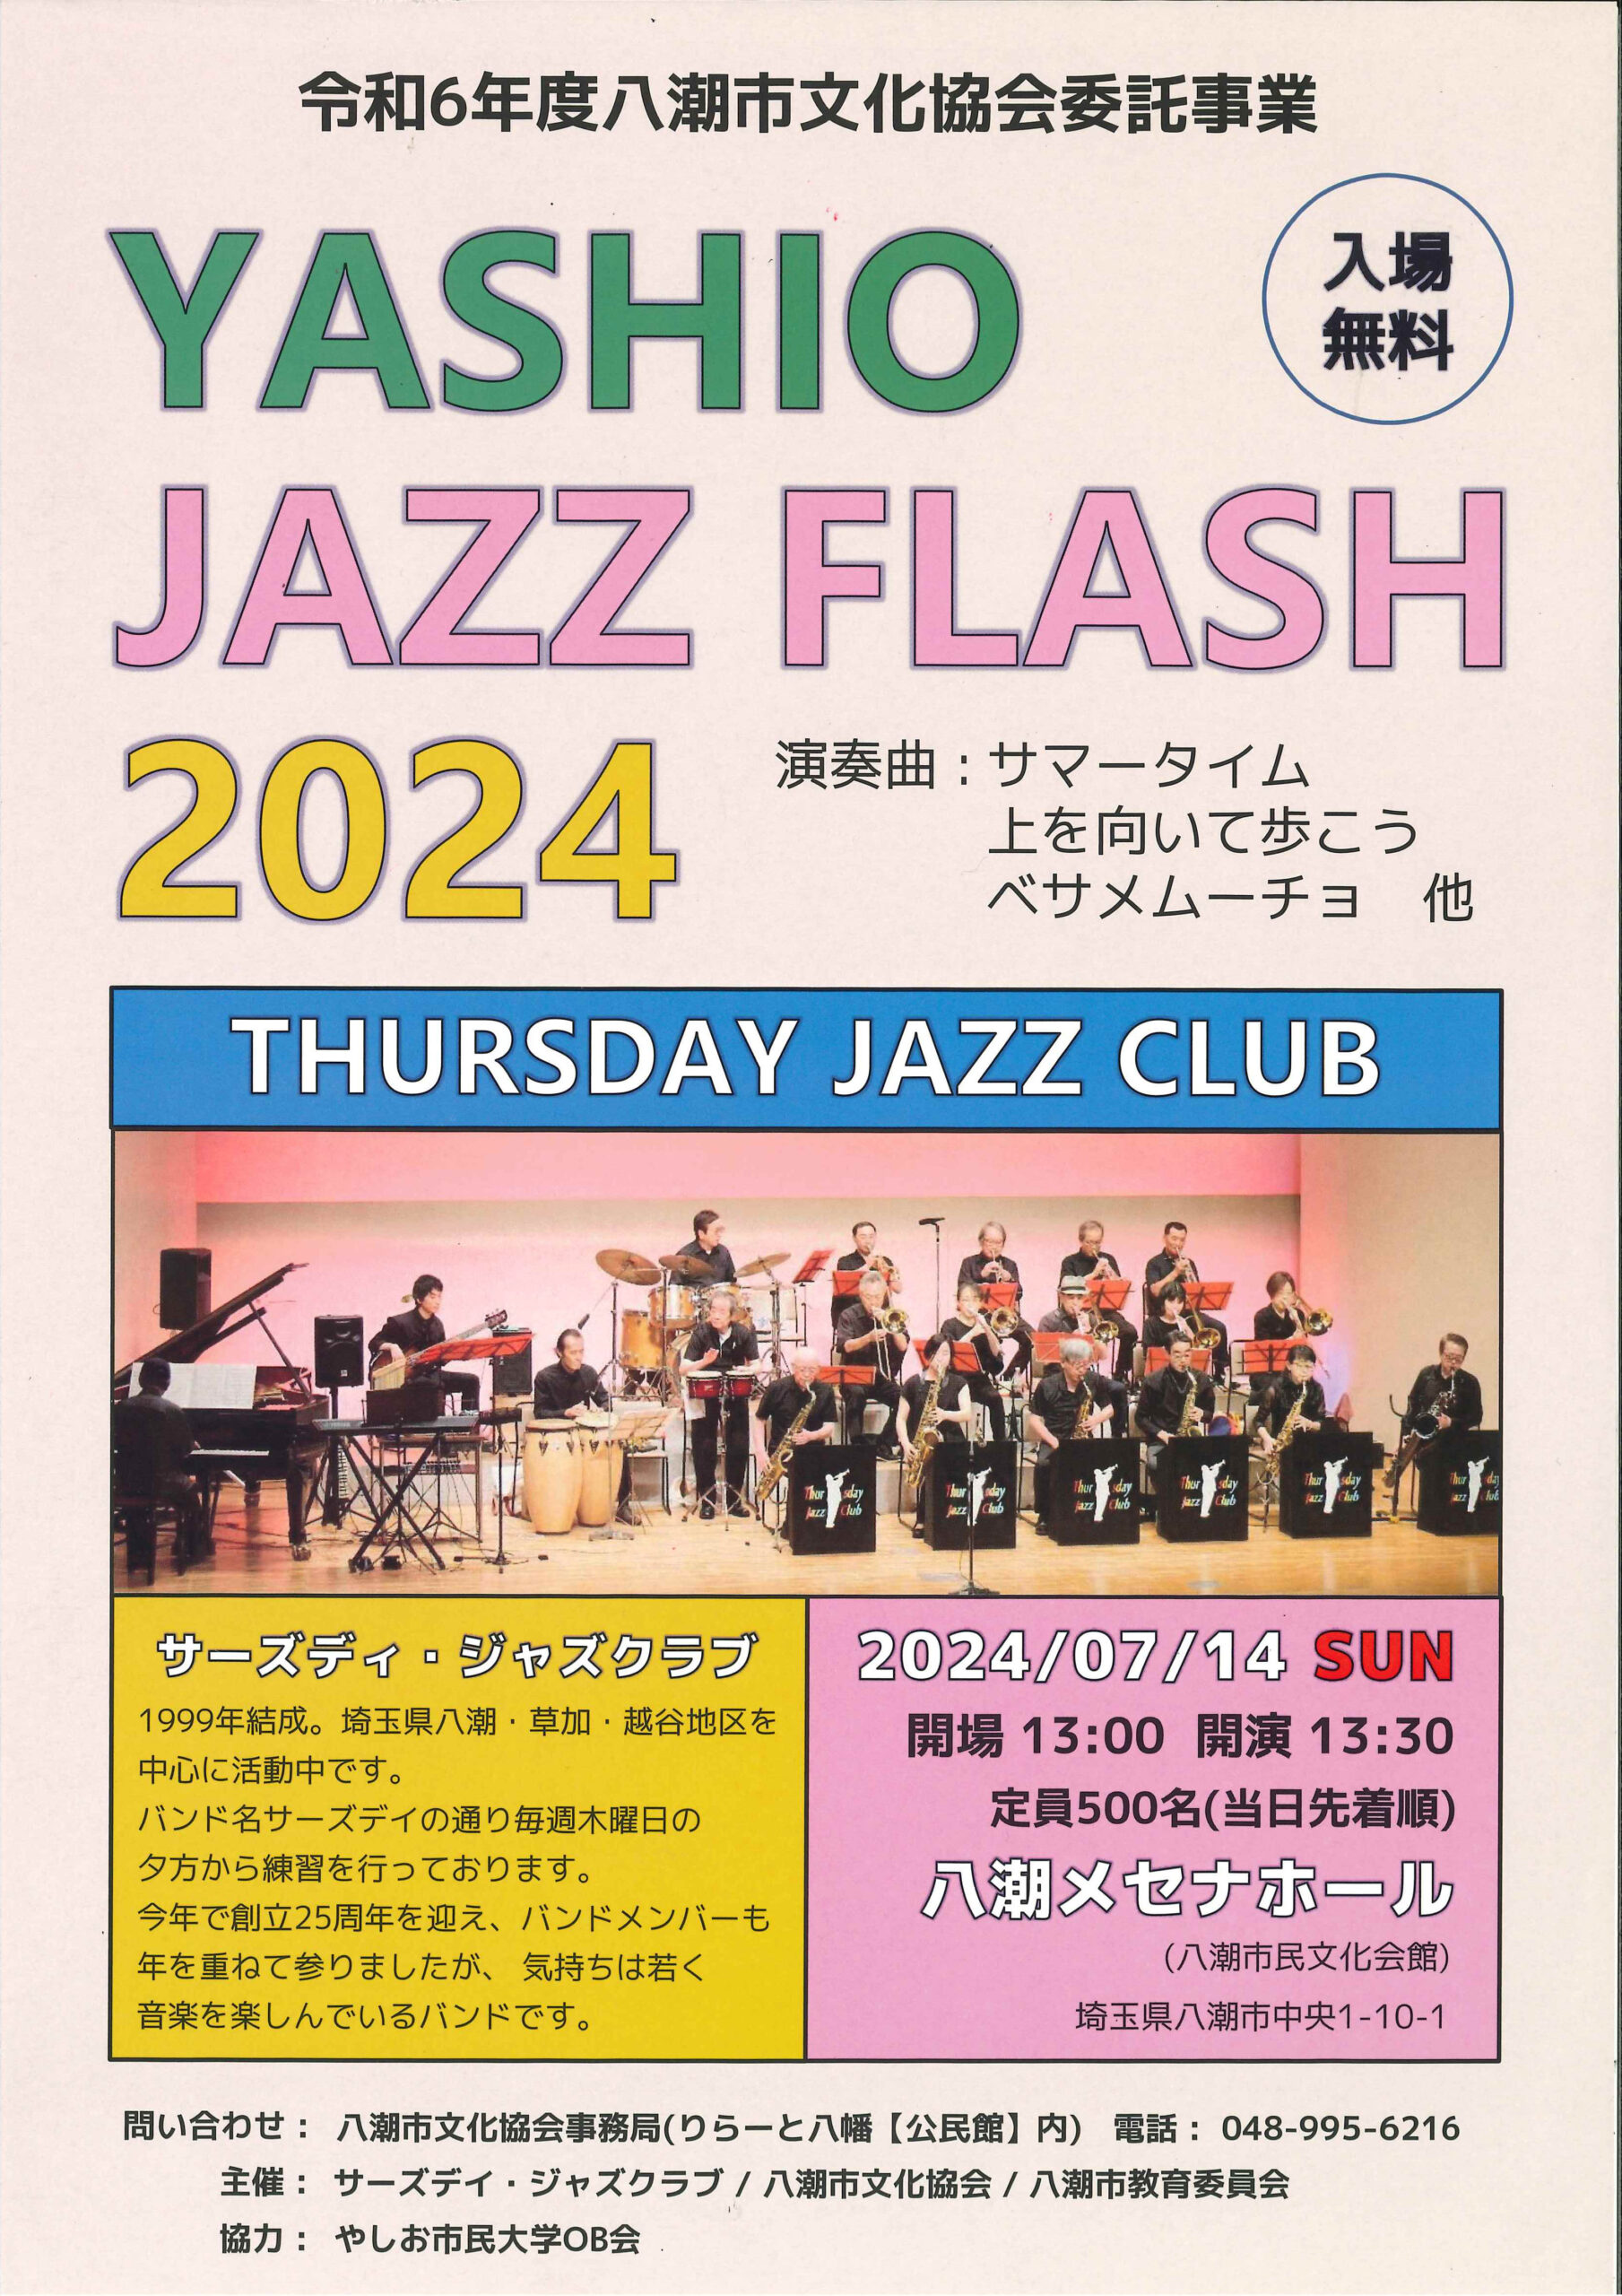 「YASHIO JAZZ FLASH（八潮ジャズフラッシュ）2024」のチラシ